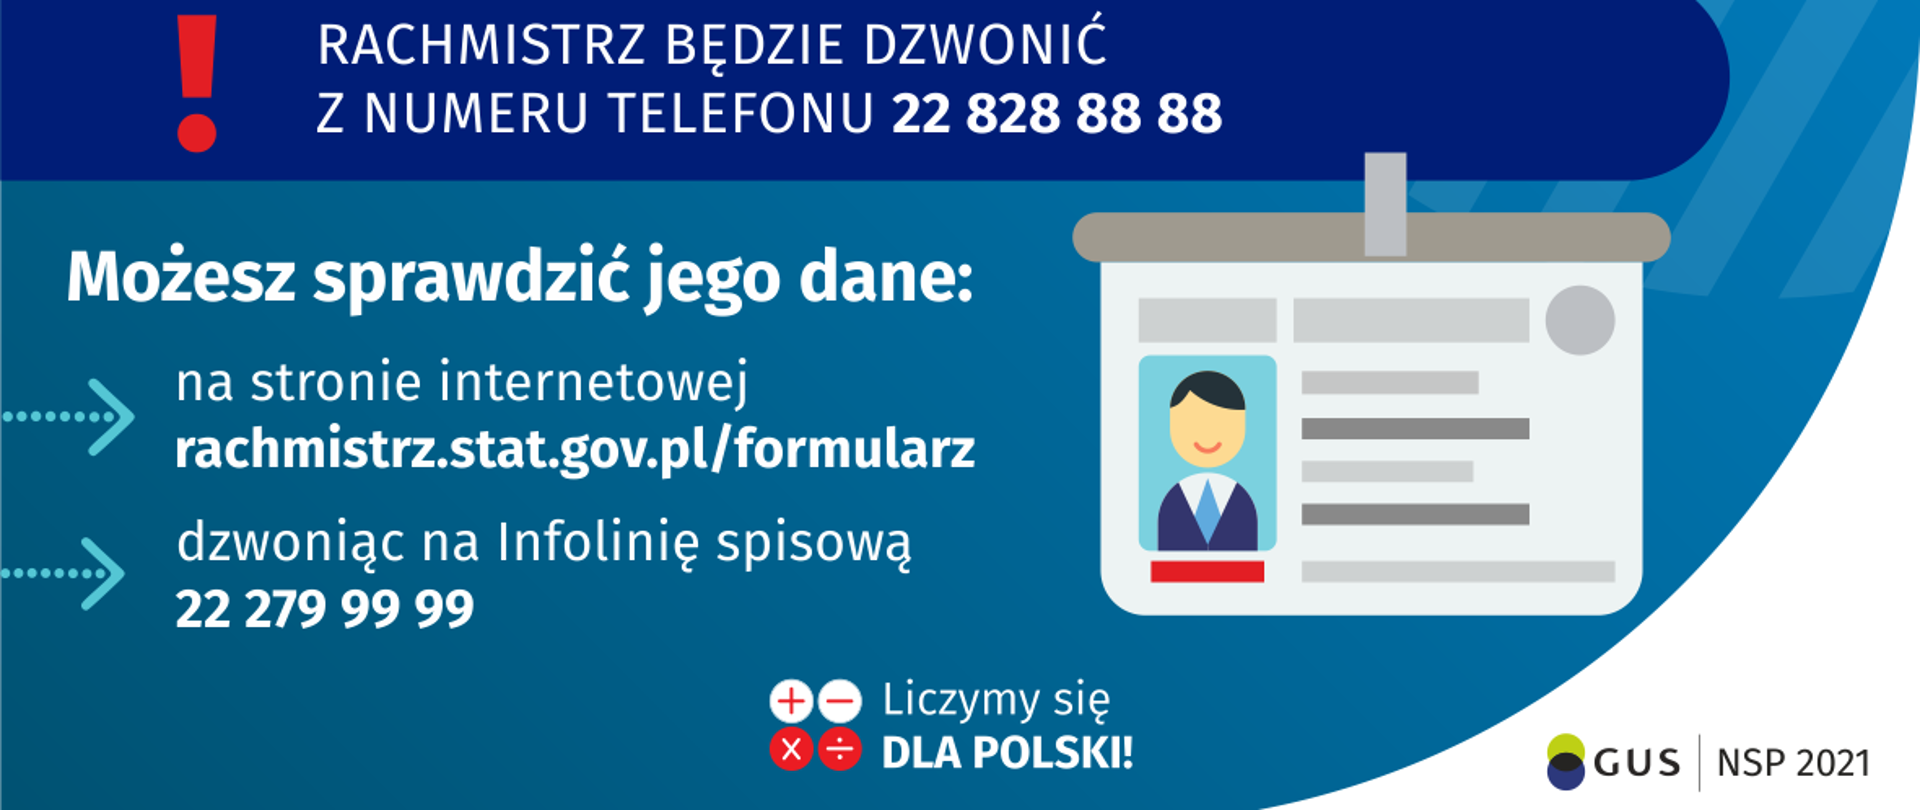 Sprawdź tożsamość rachmistrza spisowego - Gmina i Miasto Mordy - Portal  gov.pl